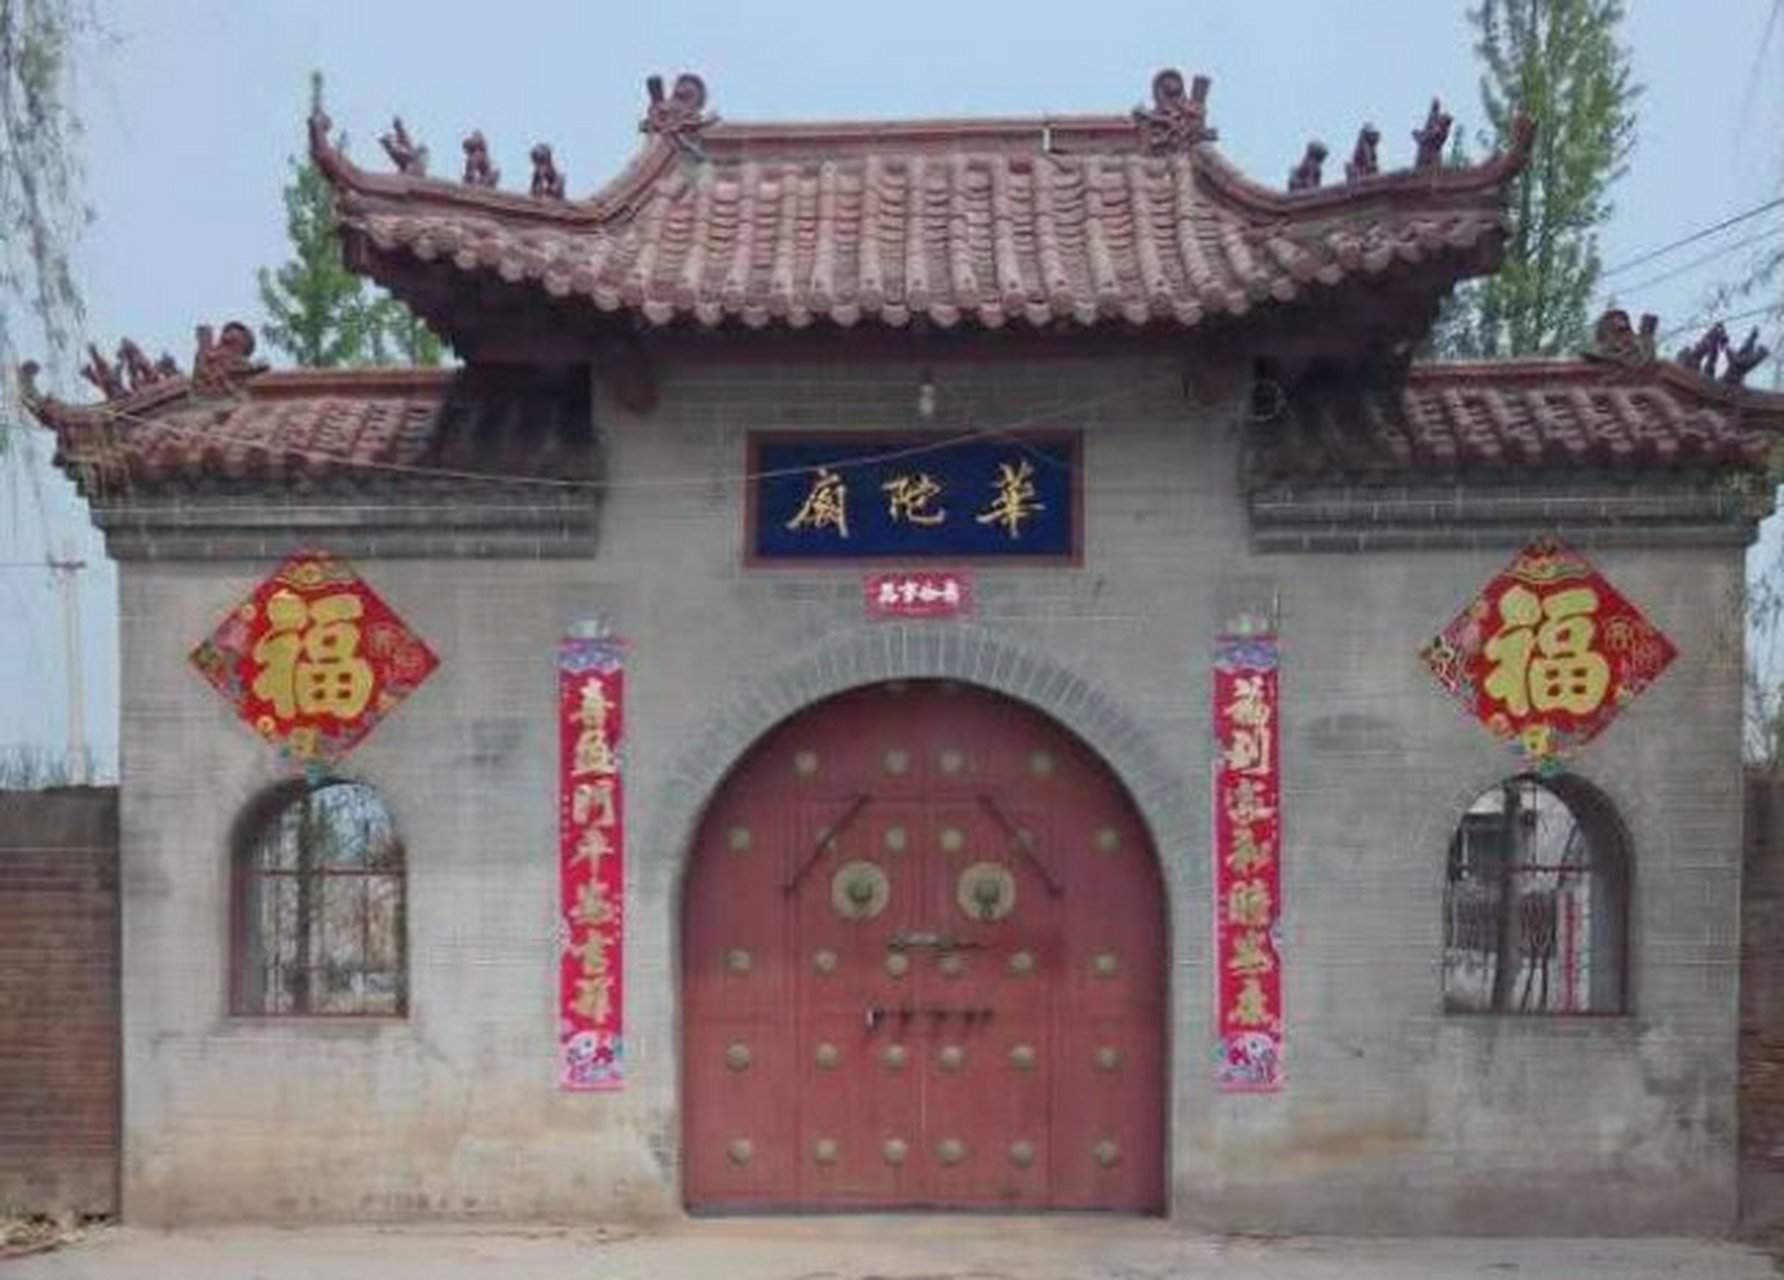 心动石刻 华佗庙村 隶属于阳谷县博济桥办事处,位于阳谷县城东南2